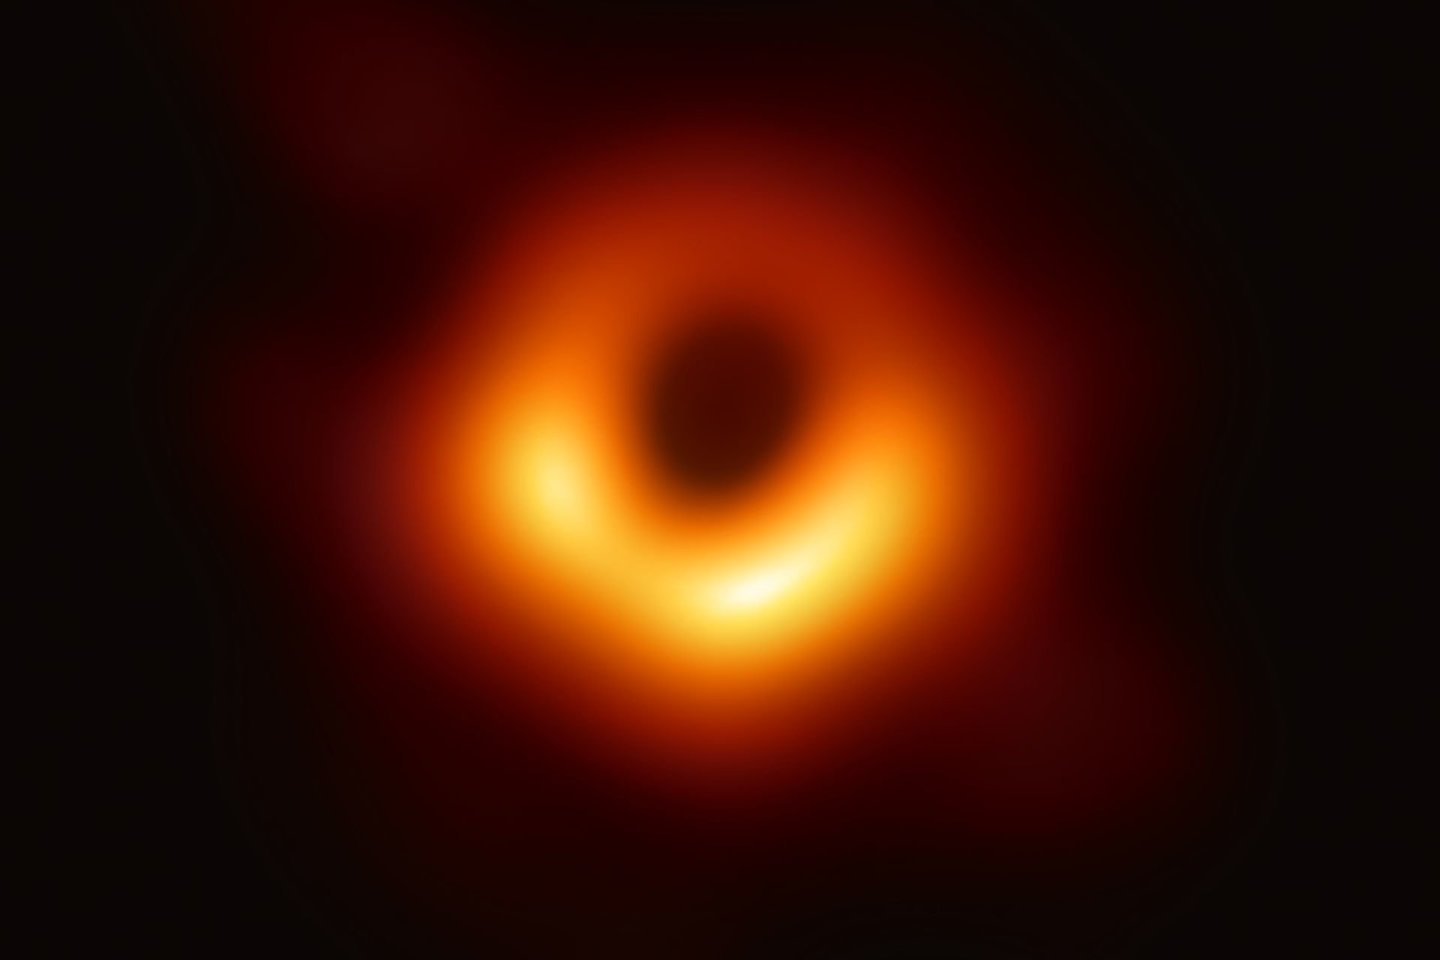  Supermasyvi skylė tūno Messier 87 galaktikoje. Tai žymus 6,5 milijardų Saulės masių objektas, kurį mokslininkų komanda pasirinko darydami pirmąją juodosios skylės nuotrauką.<br> EHT nuotr.